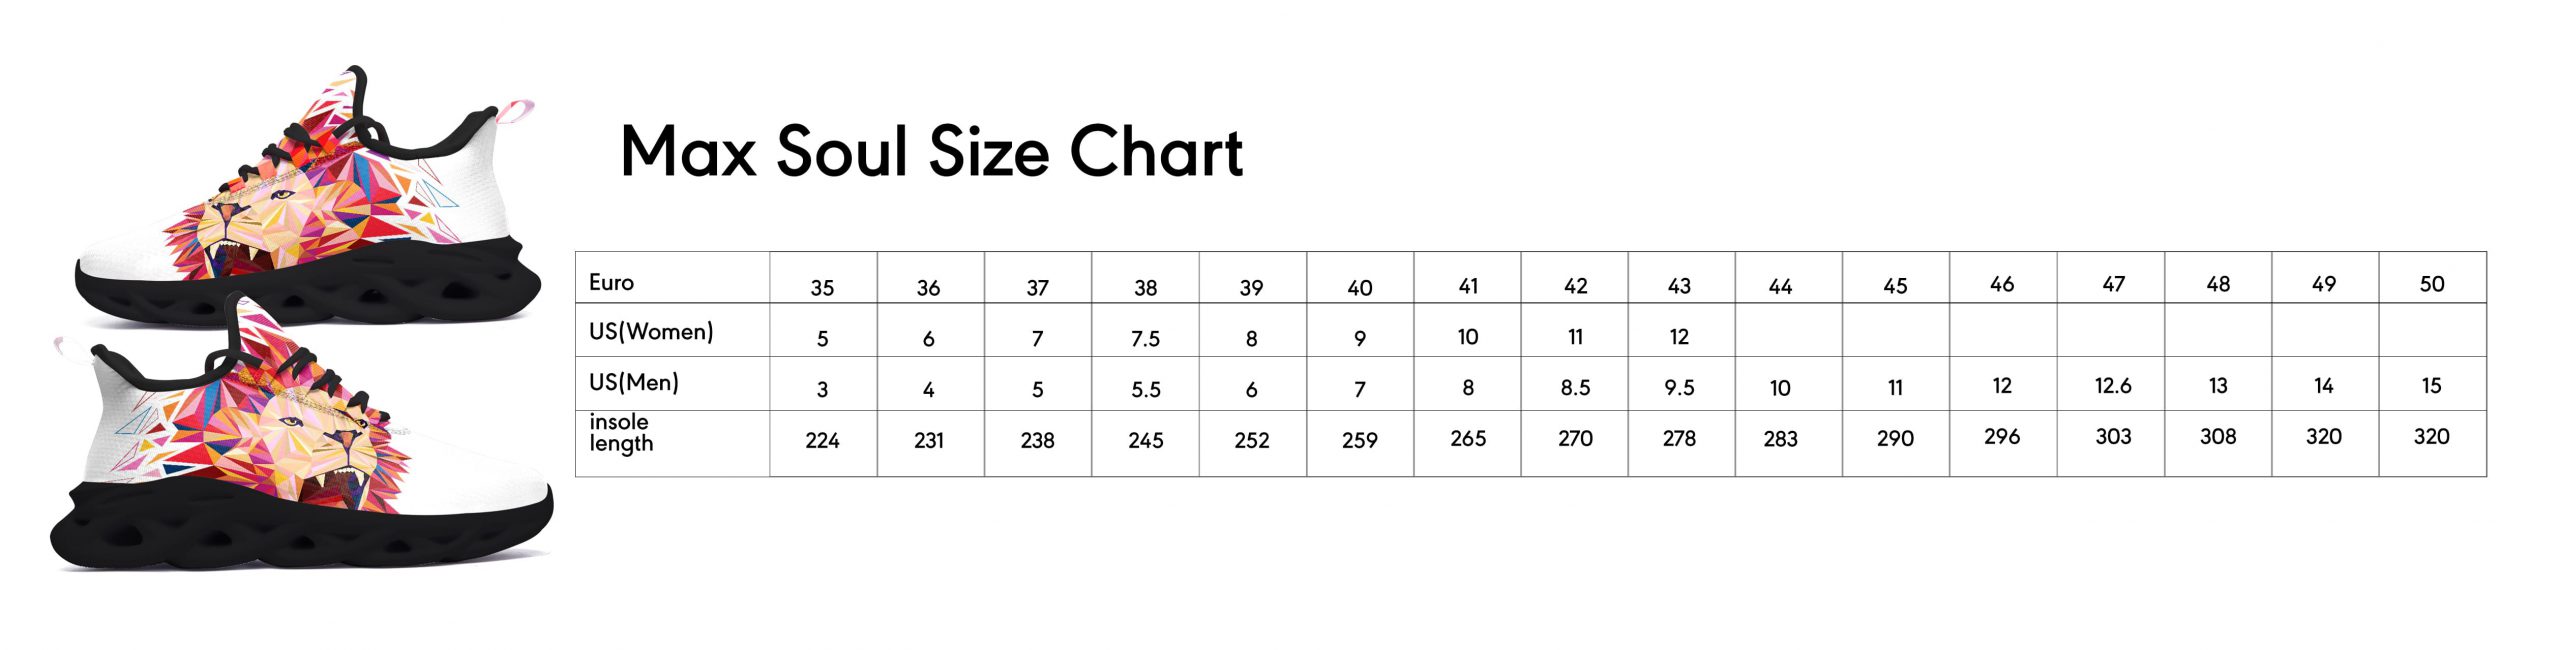 maxsoul size chart